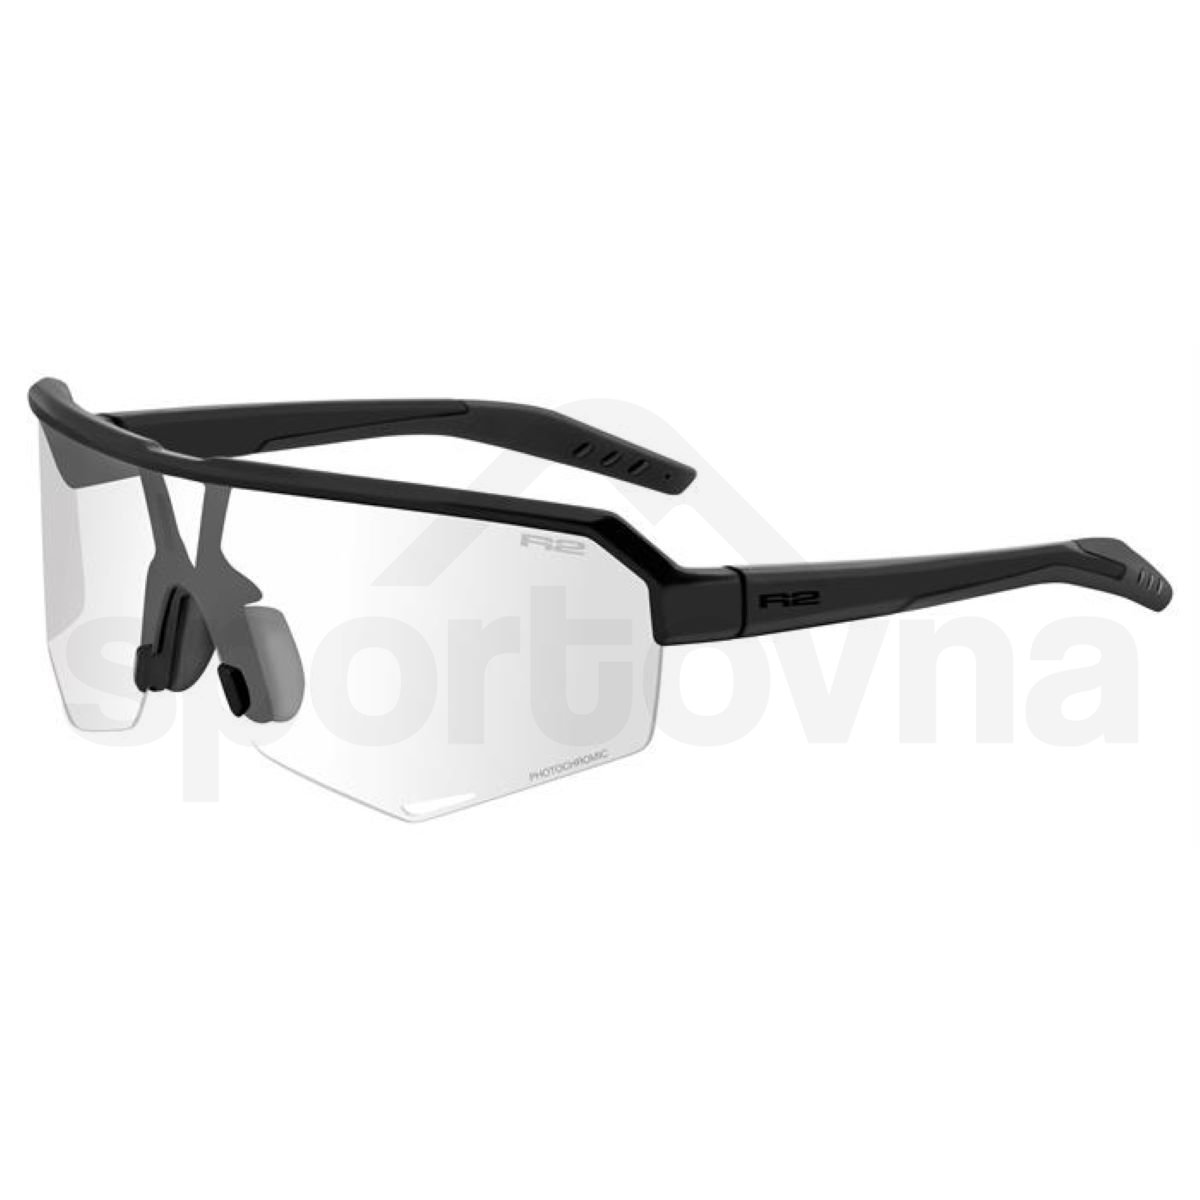 Sportovní brýle R2 Fluke - černá